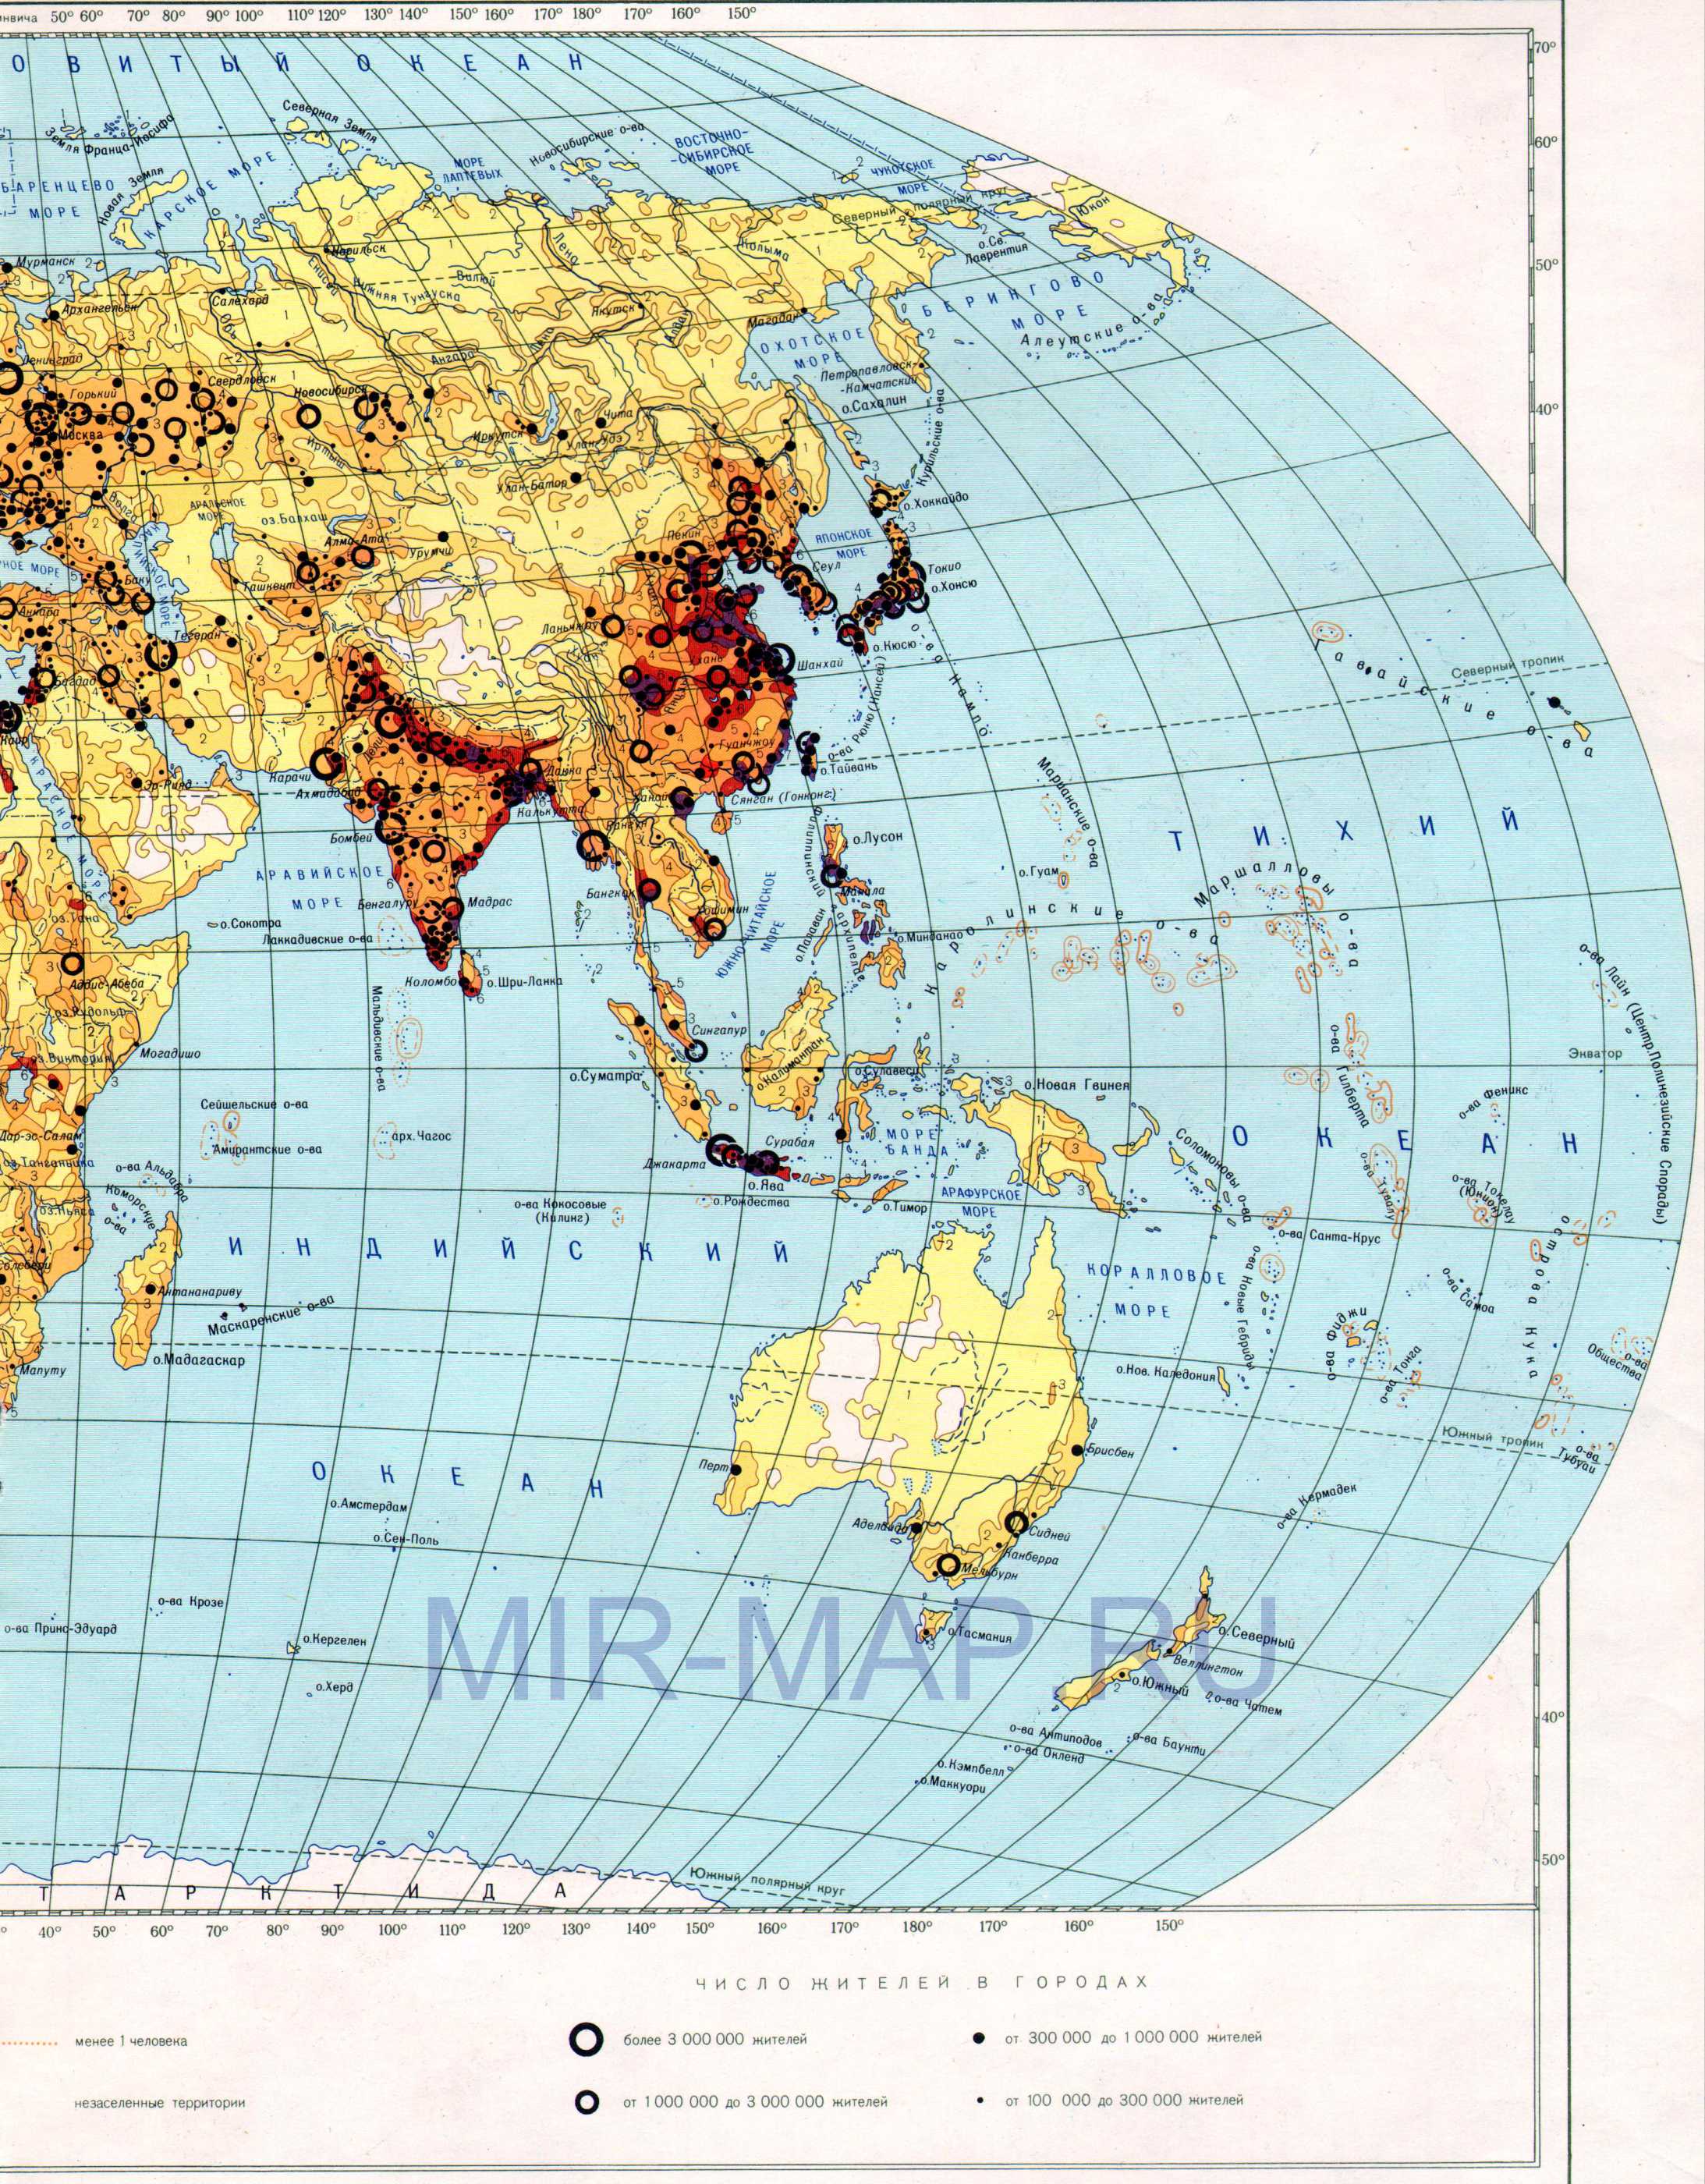 Карта плотности населения на земном шаре. Карта мира масштаба 1см:750км - плотность населения, B0 - 